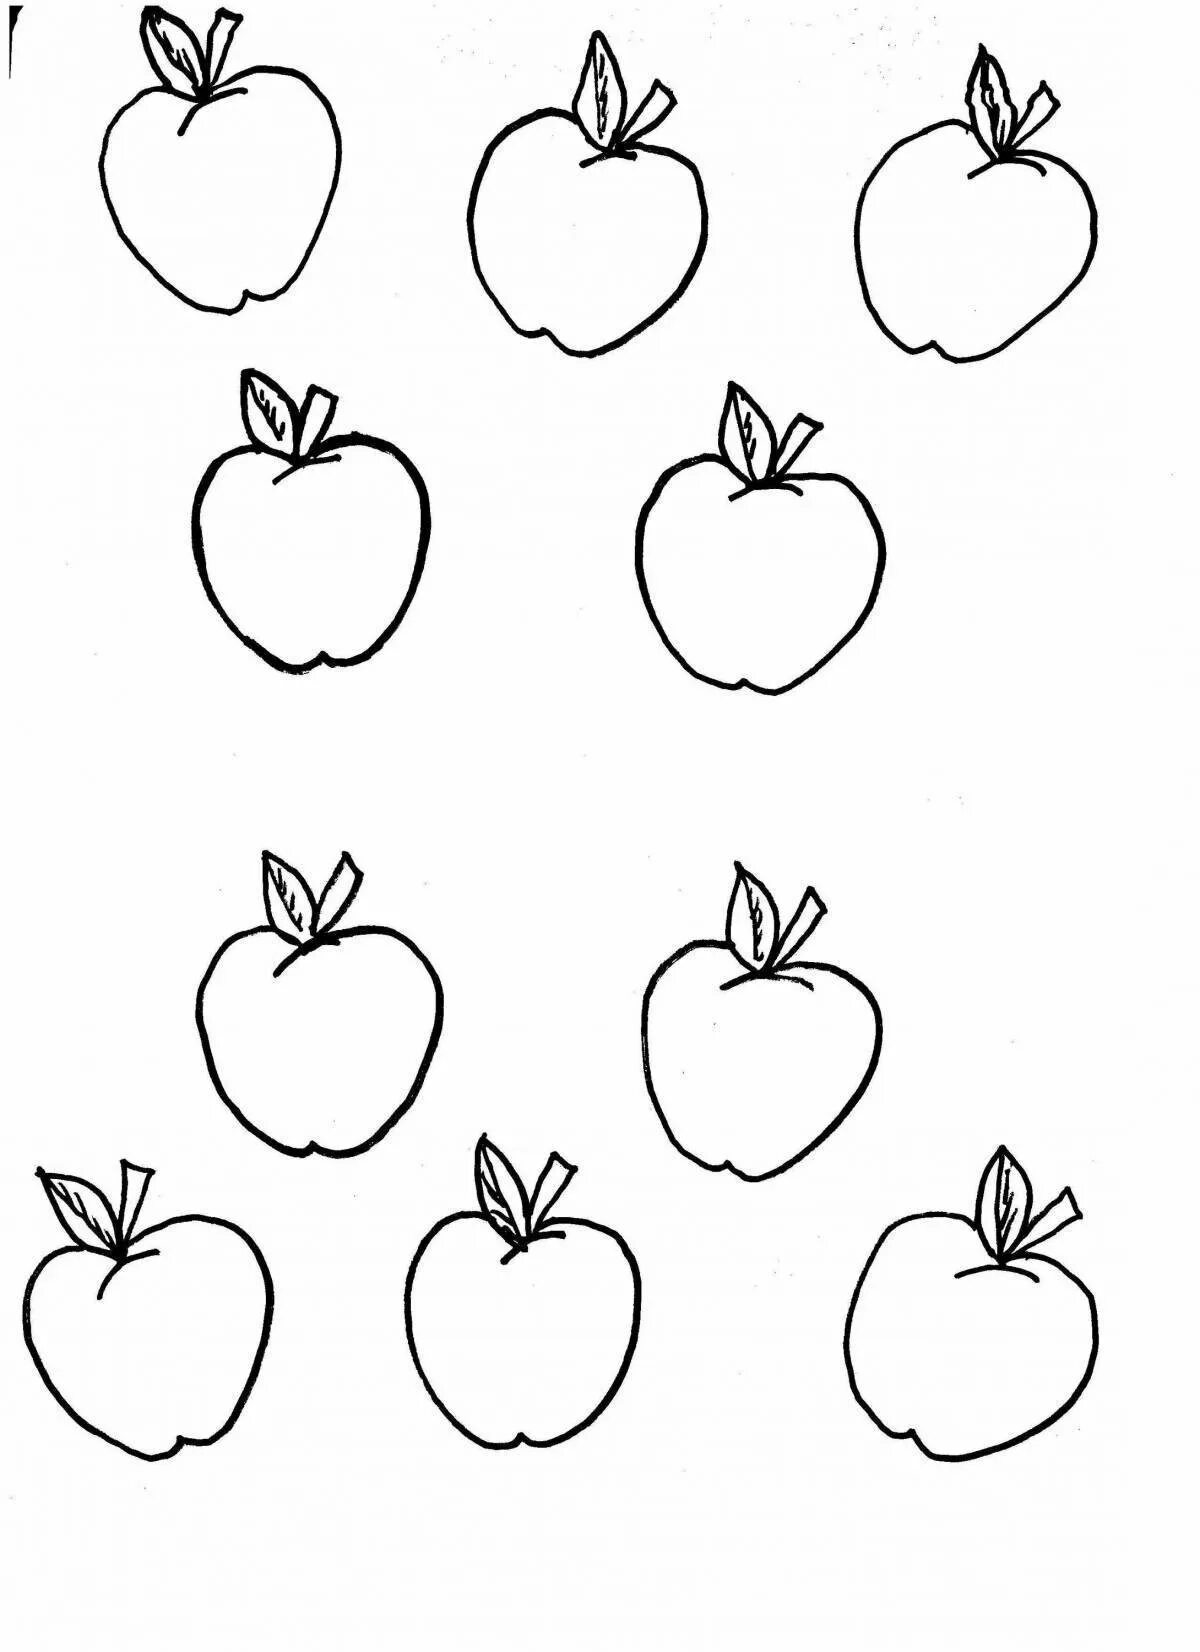 Раскраска 3 яблока. Яблоко раскраска. Яблочко раскраска для детей. Яблоко раскраска для детей. Яблоко трафарет.